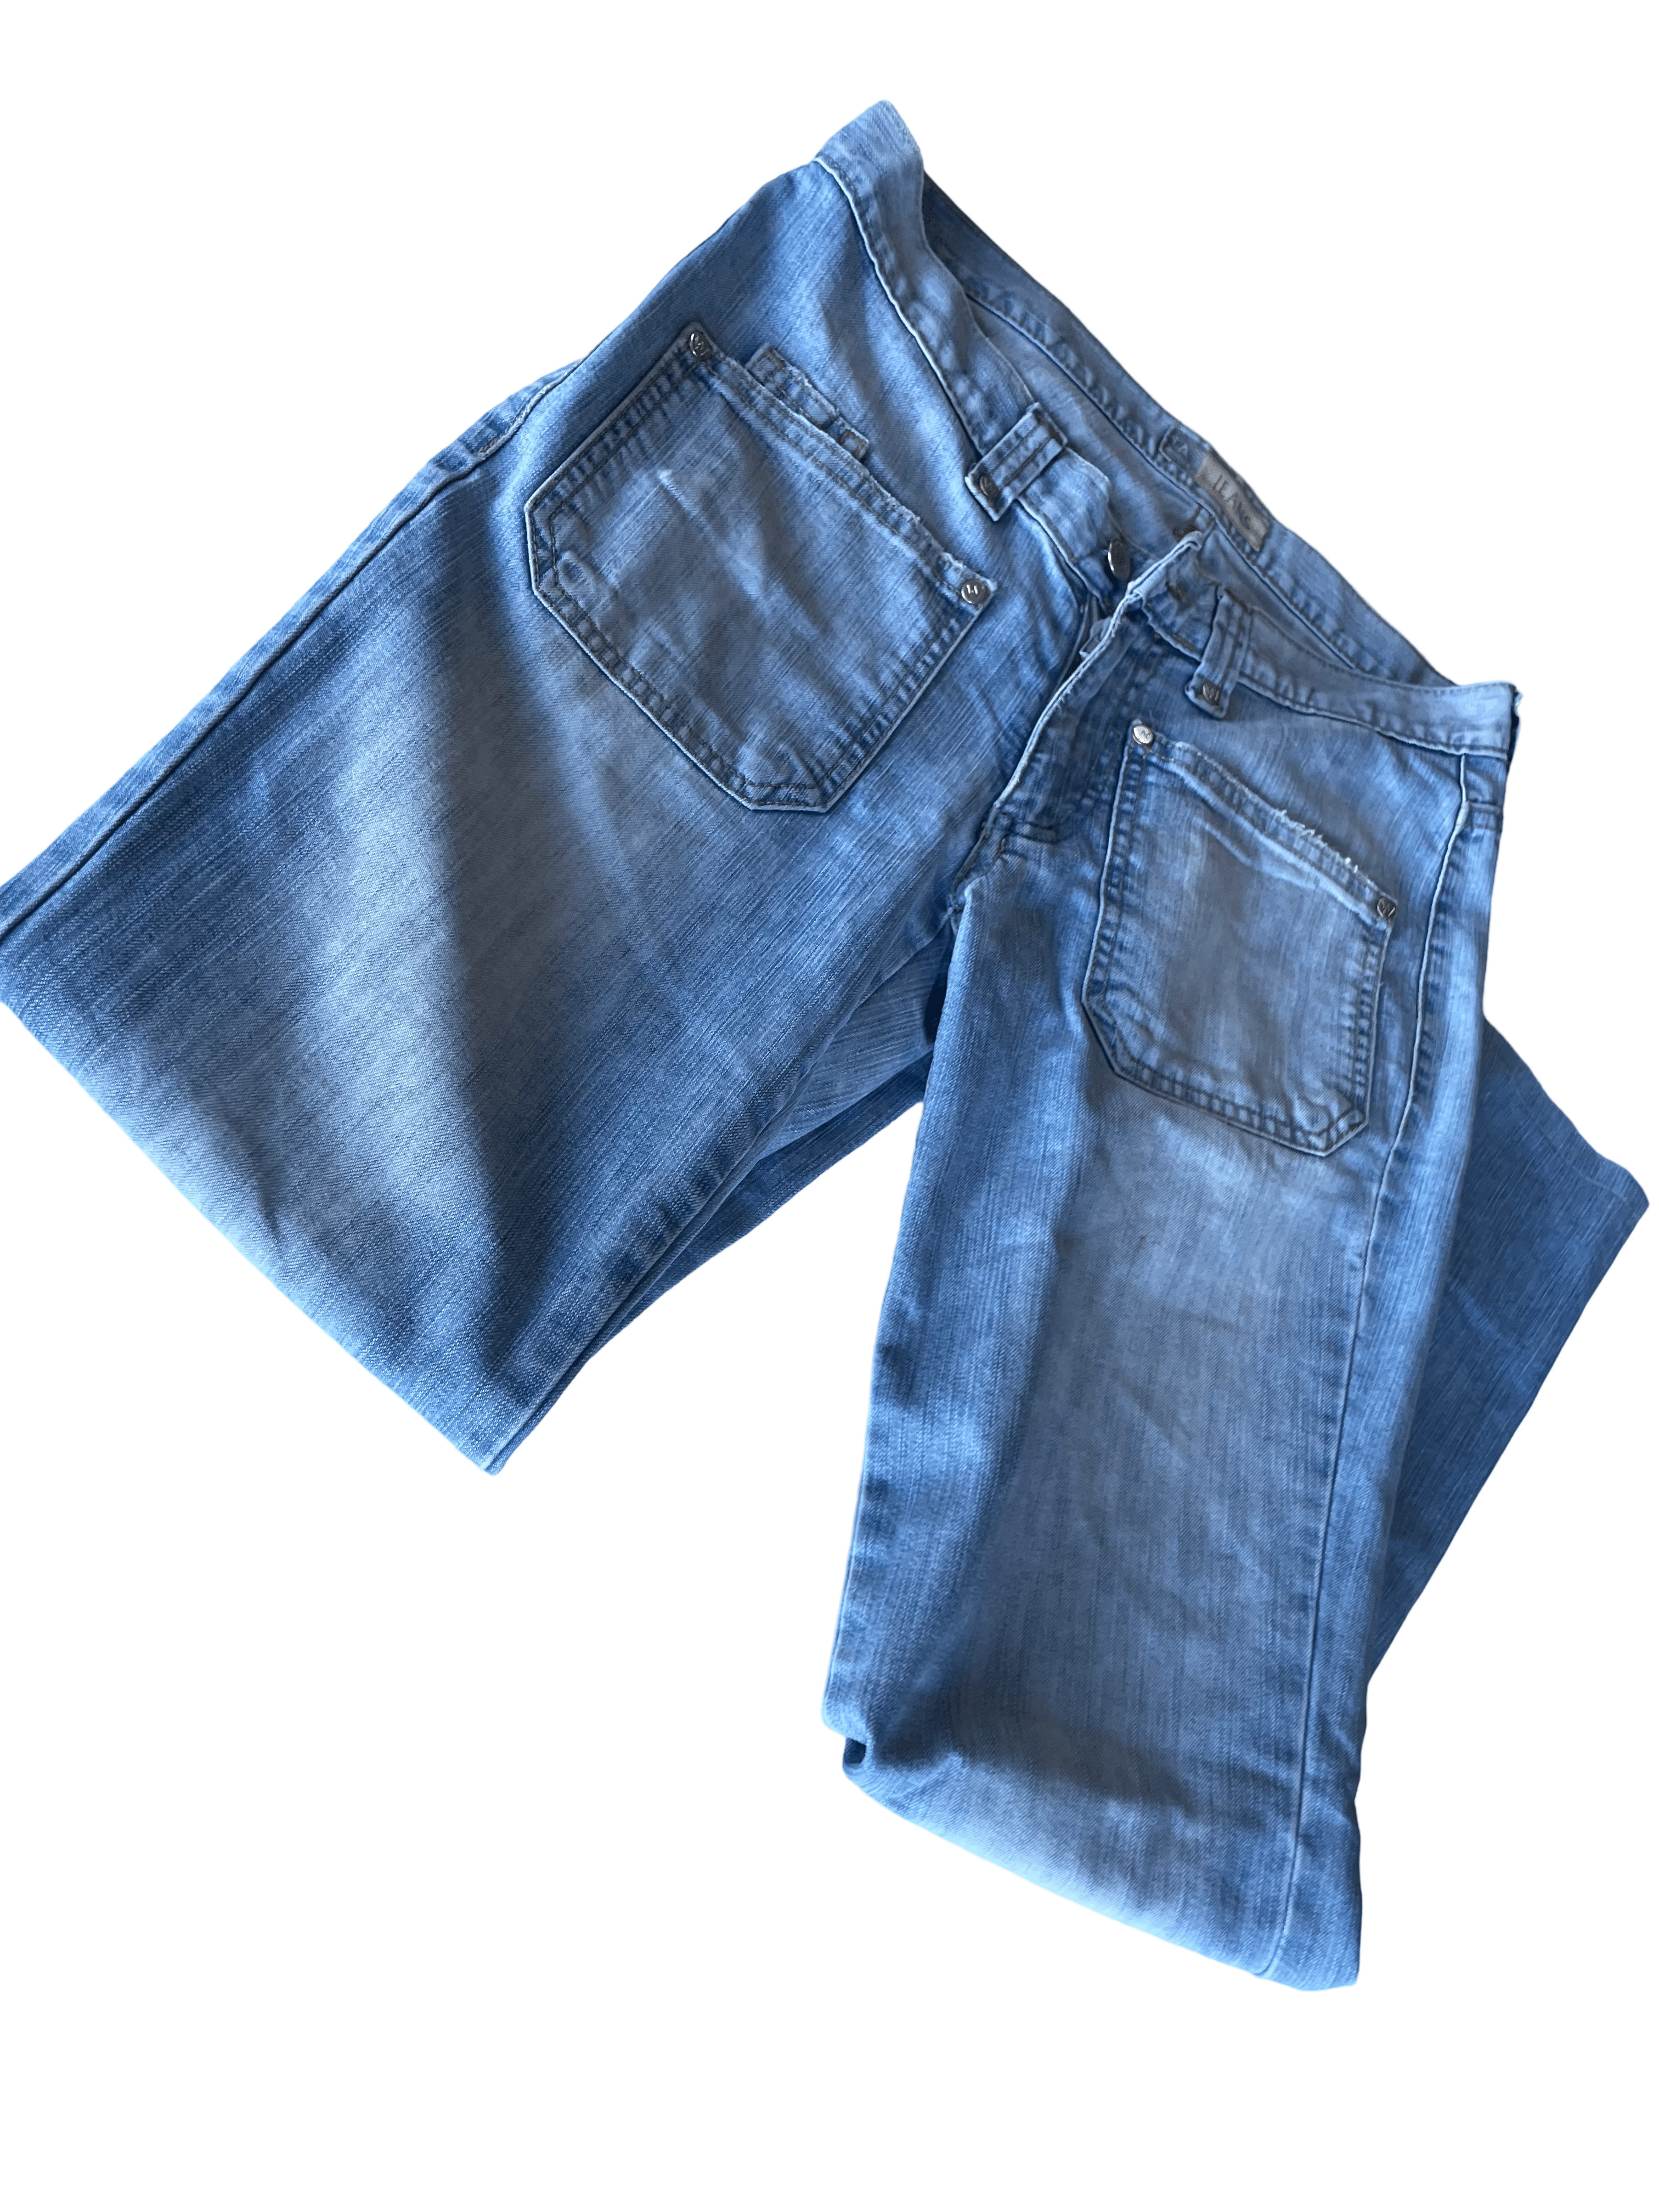 Vintage women's light blue A jeans in M| L27 W30| SKU 4431